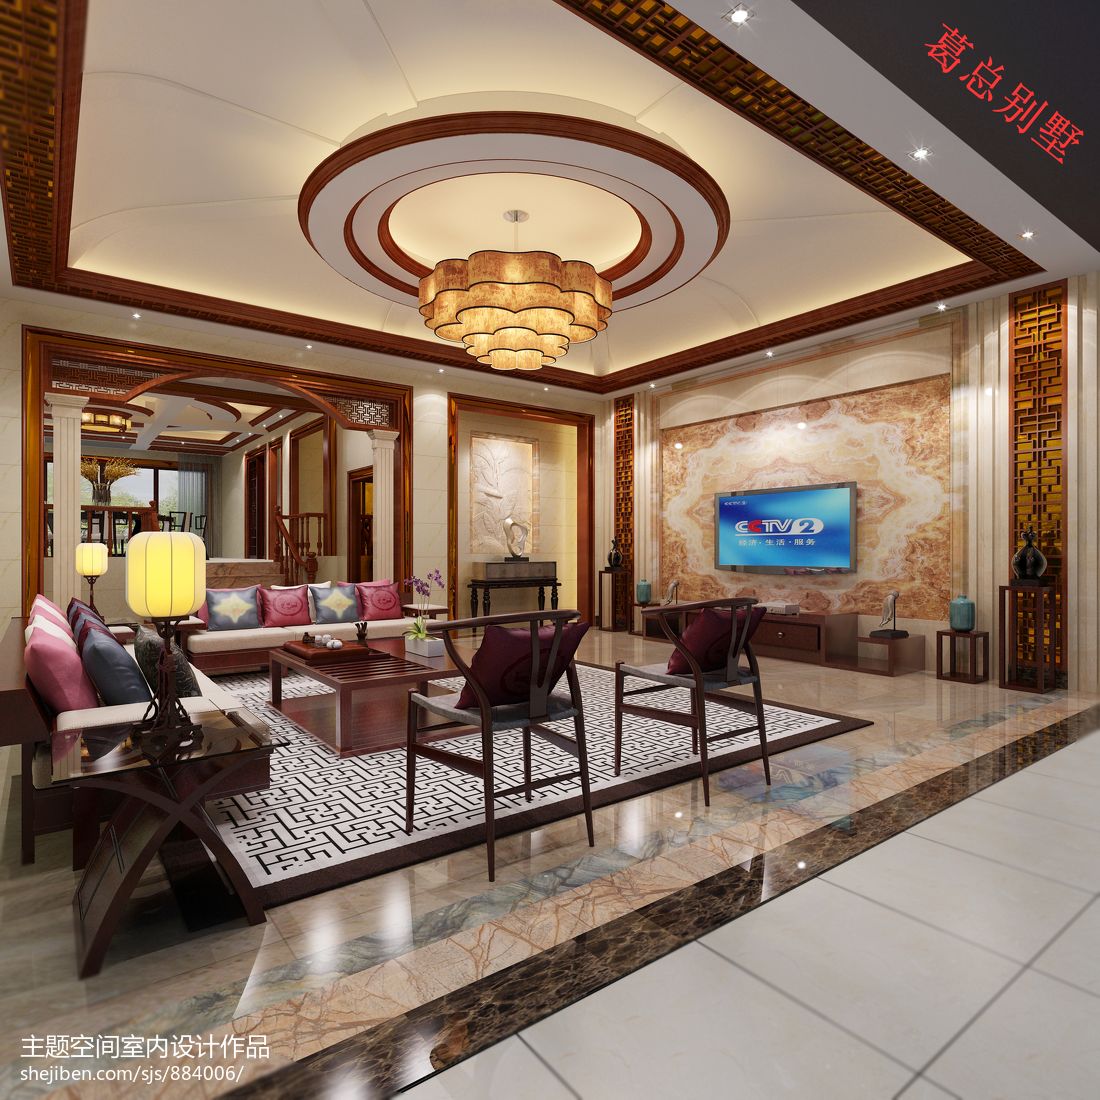 中式风格别墅奢华客厅电视墙装修效果图